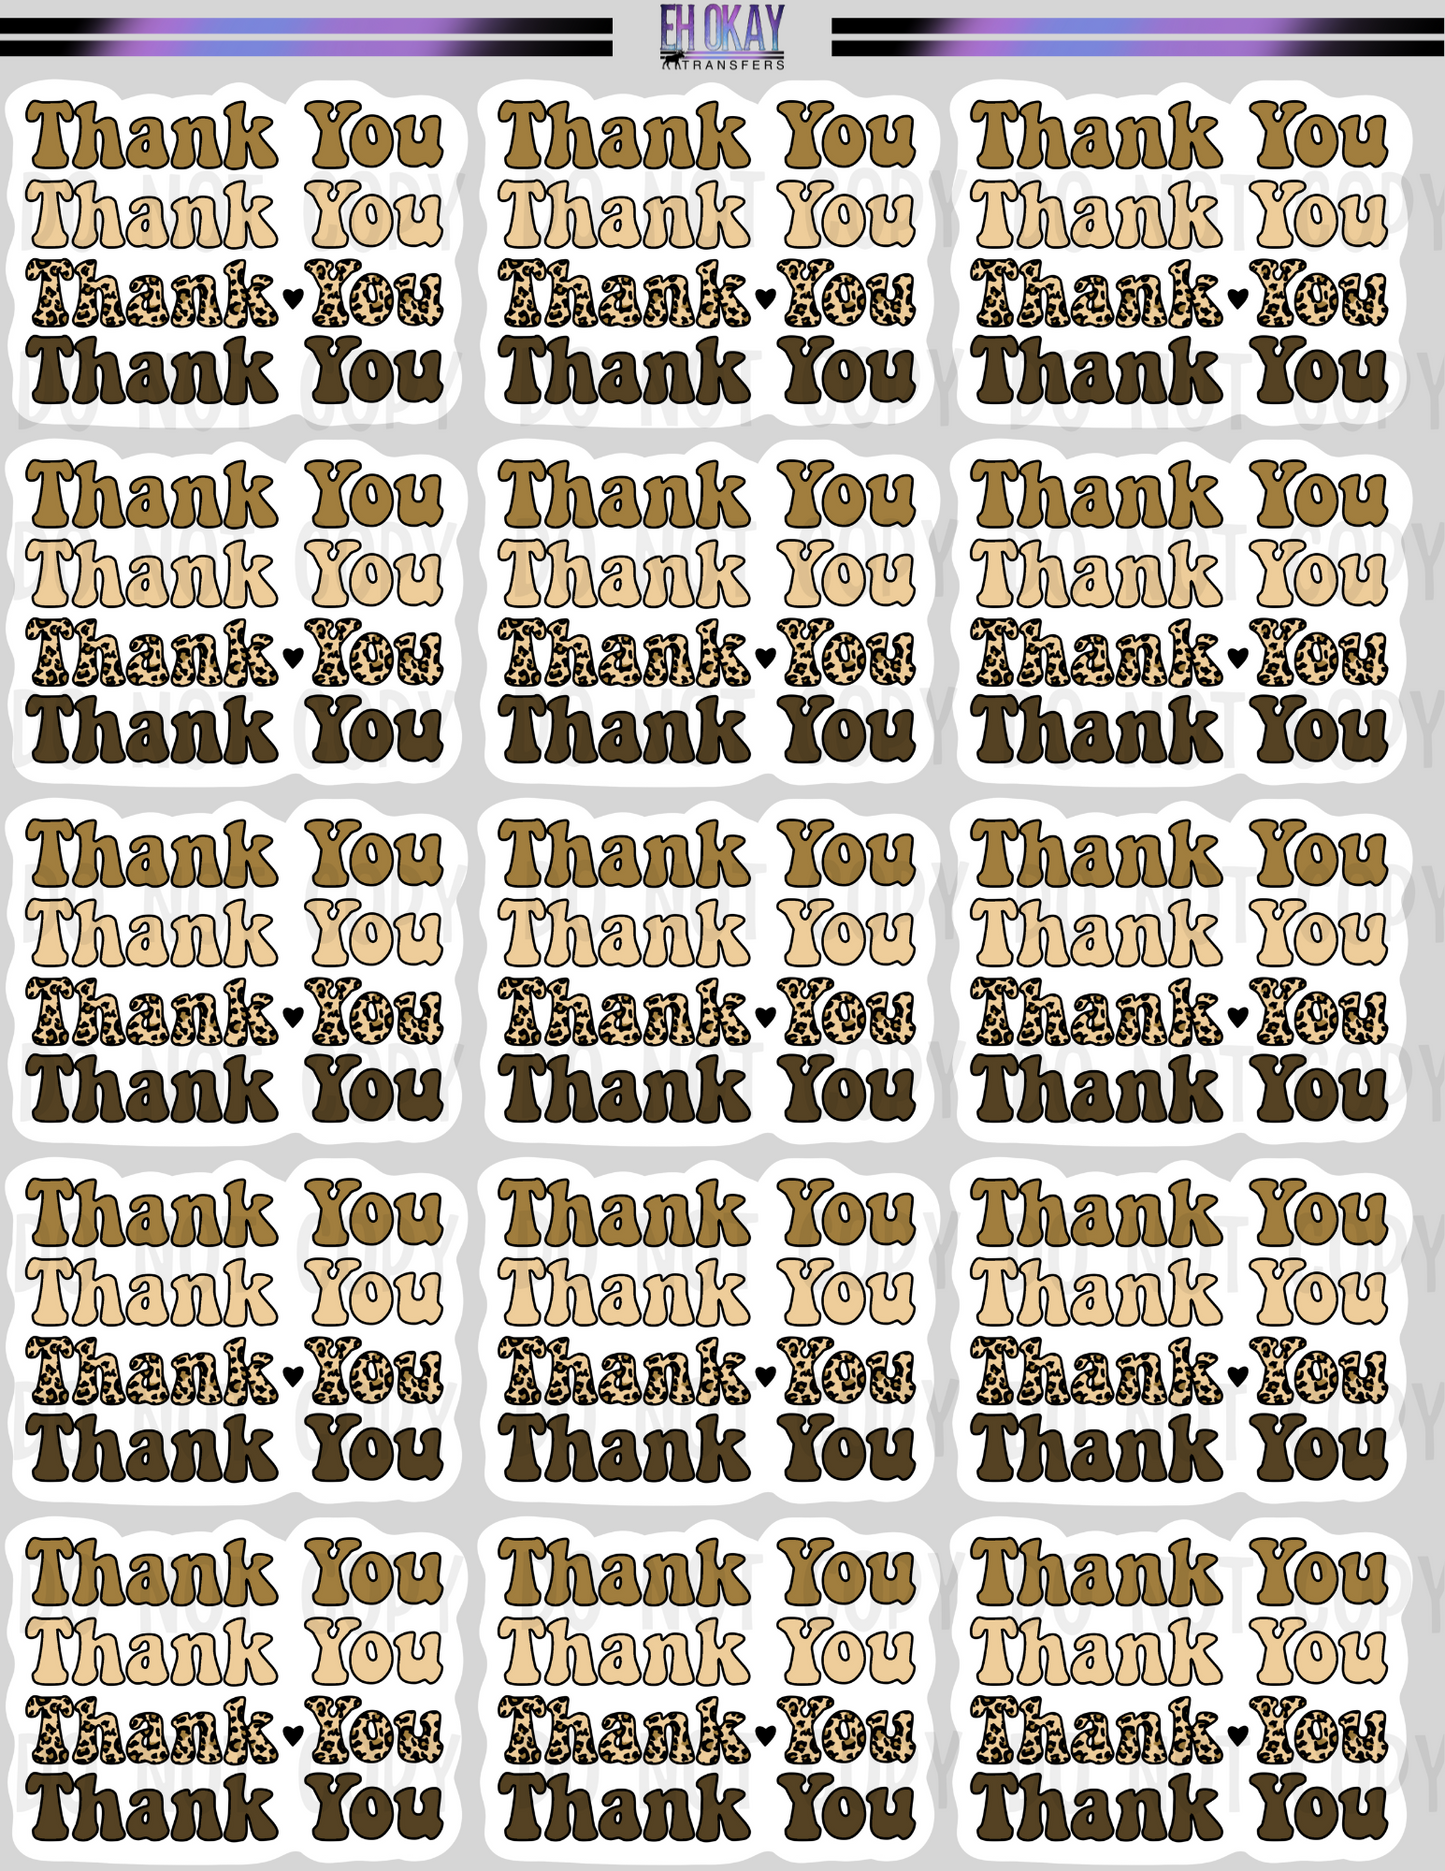 Thank you - Vinyl sticker sheet